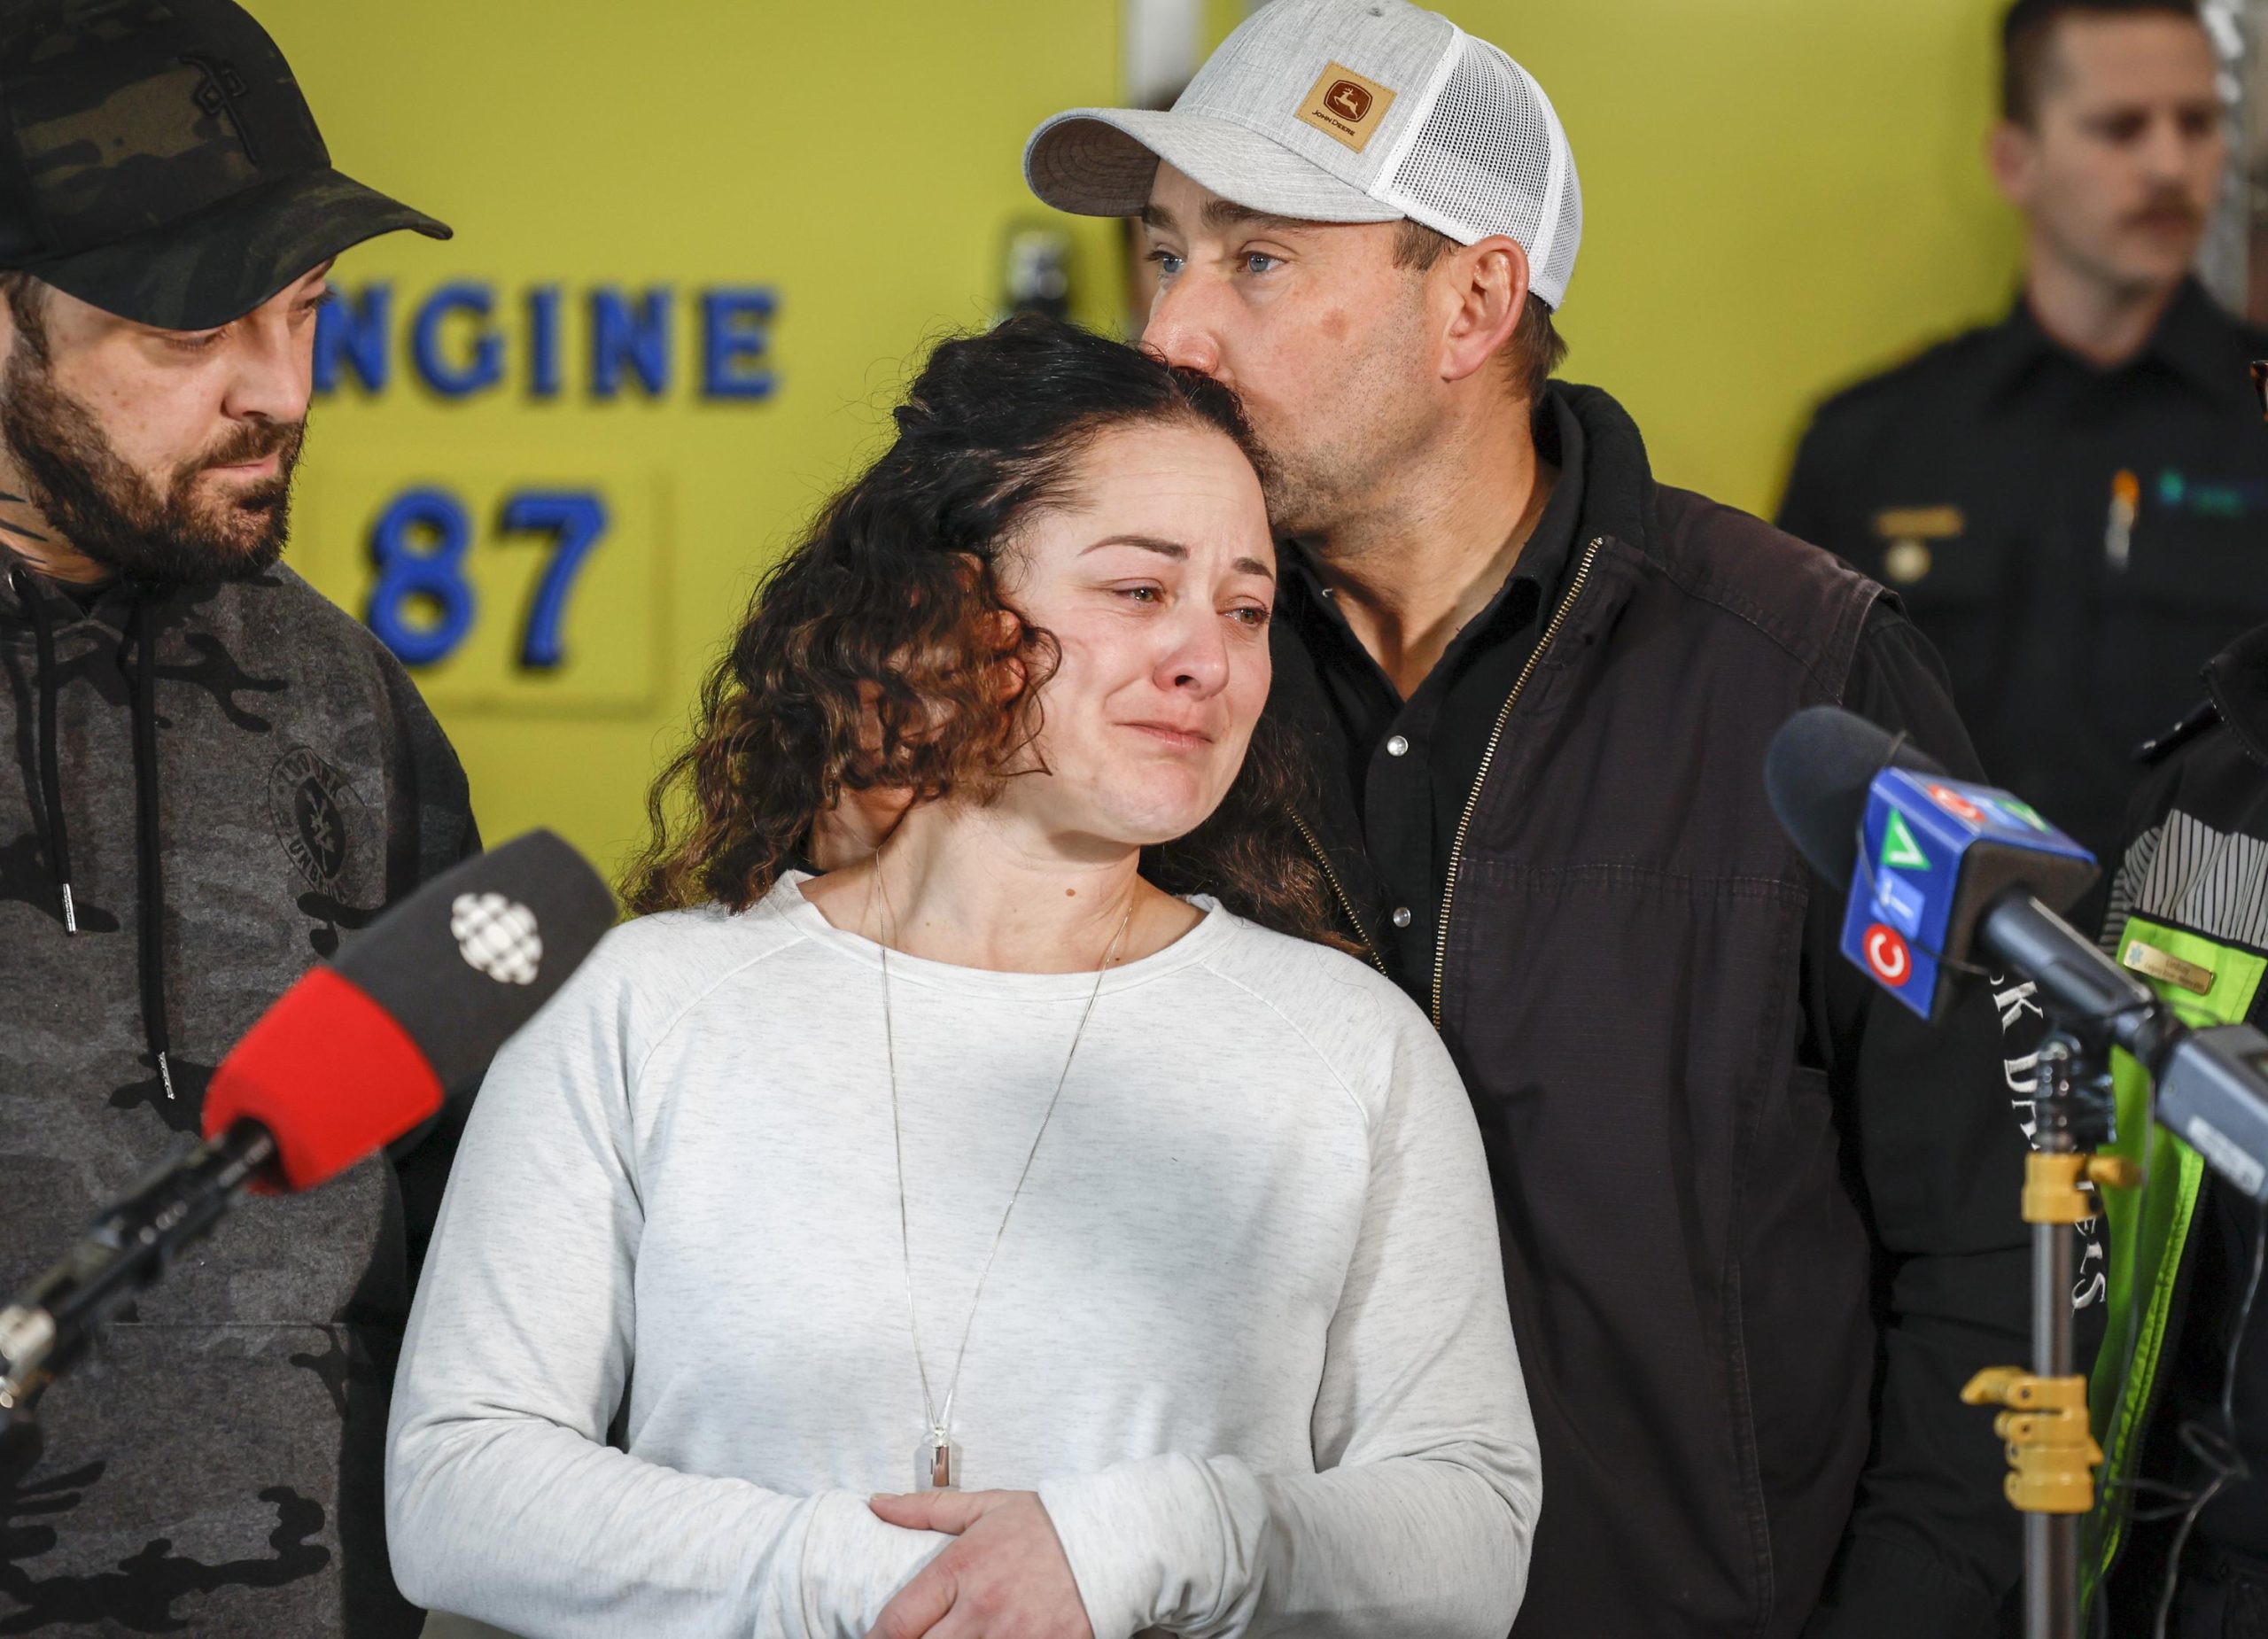 El paramédico canadiense sin saberlo trató a su hija en un accidente fatal